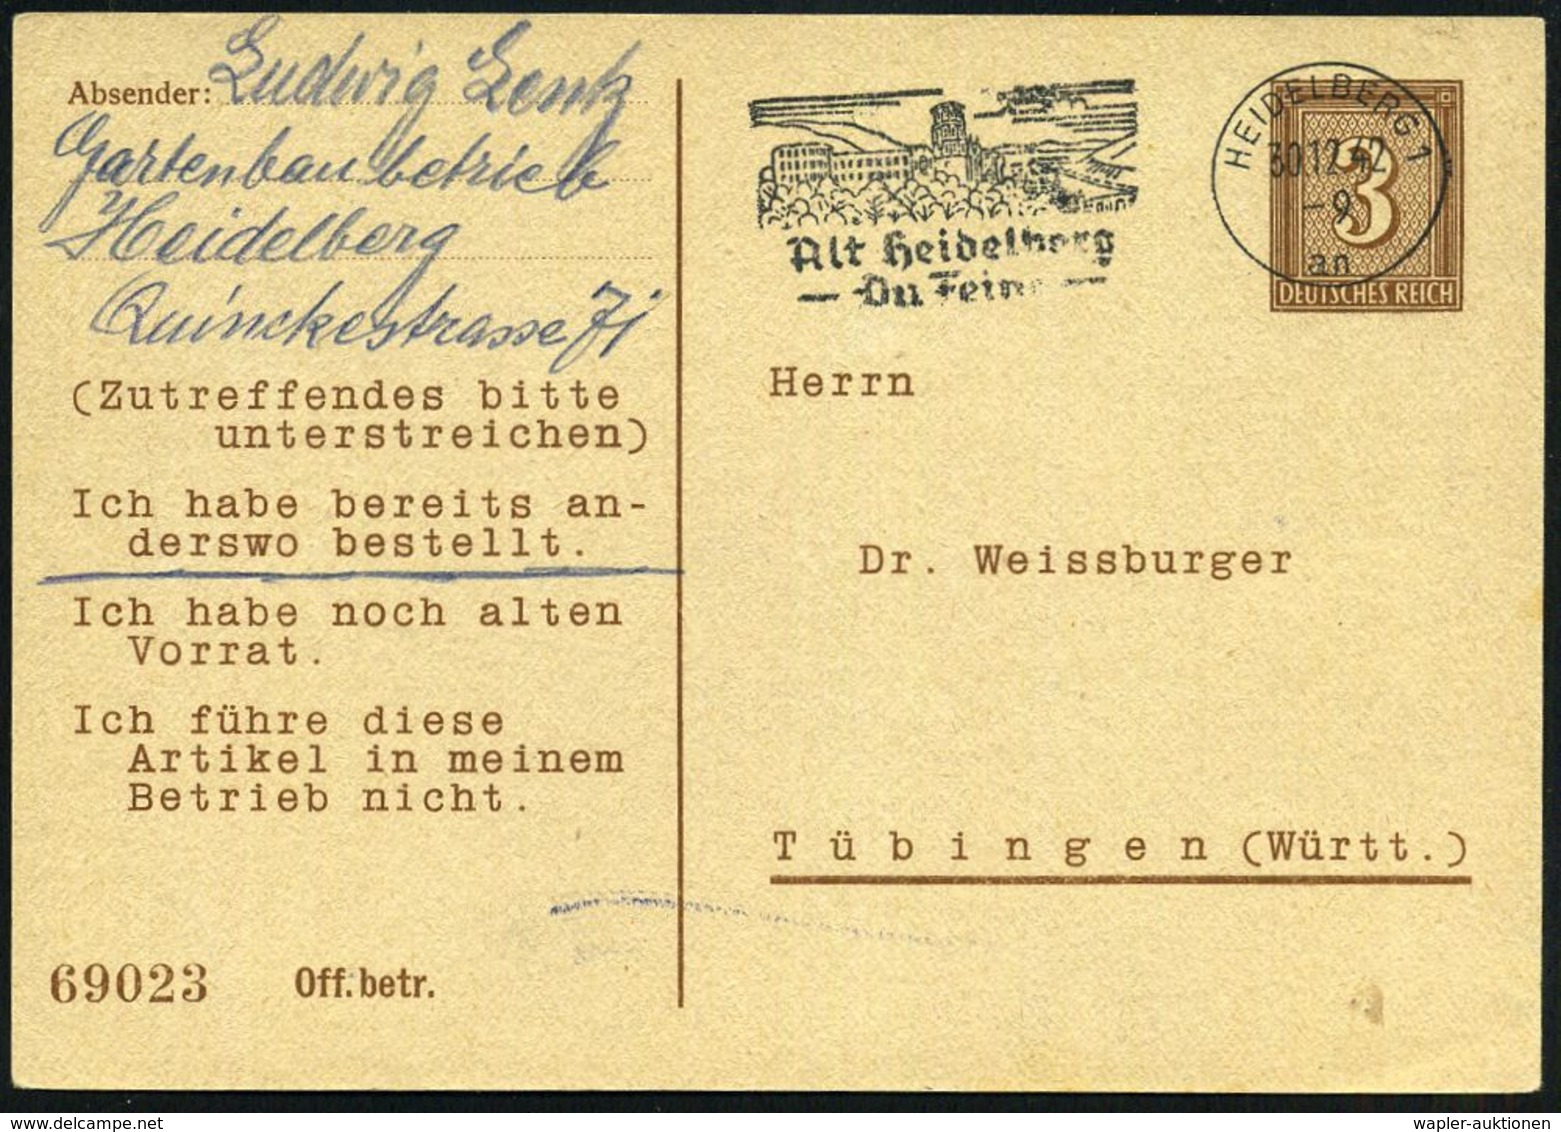 HEIDELBERG 1/ An/ Alt Heidelberg/ Du Feine 1942 (30.12.) MaWSt. (Schloß) = Liedtext Auf PP 3 Pf. Ziffer, Braun: Dr. Weis - Musik